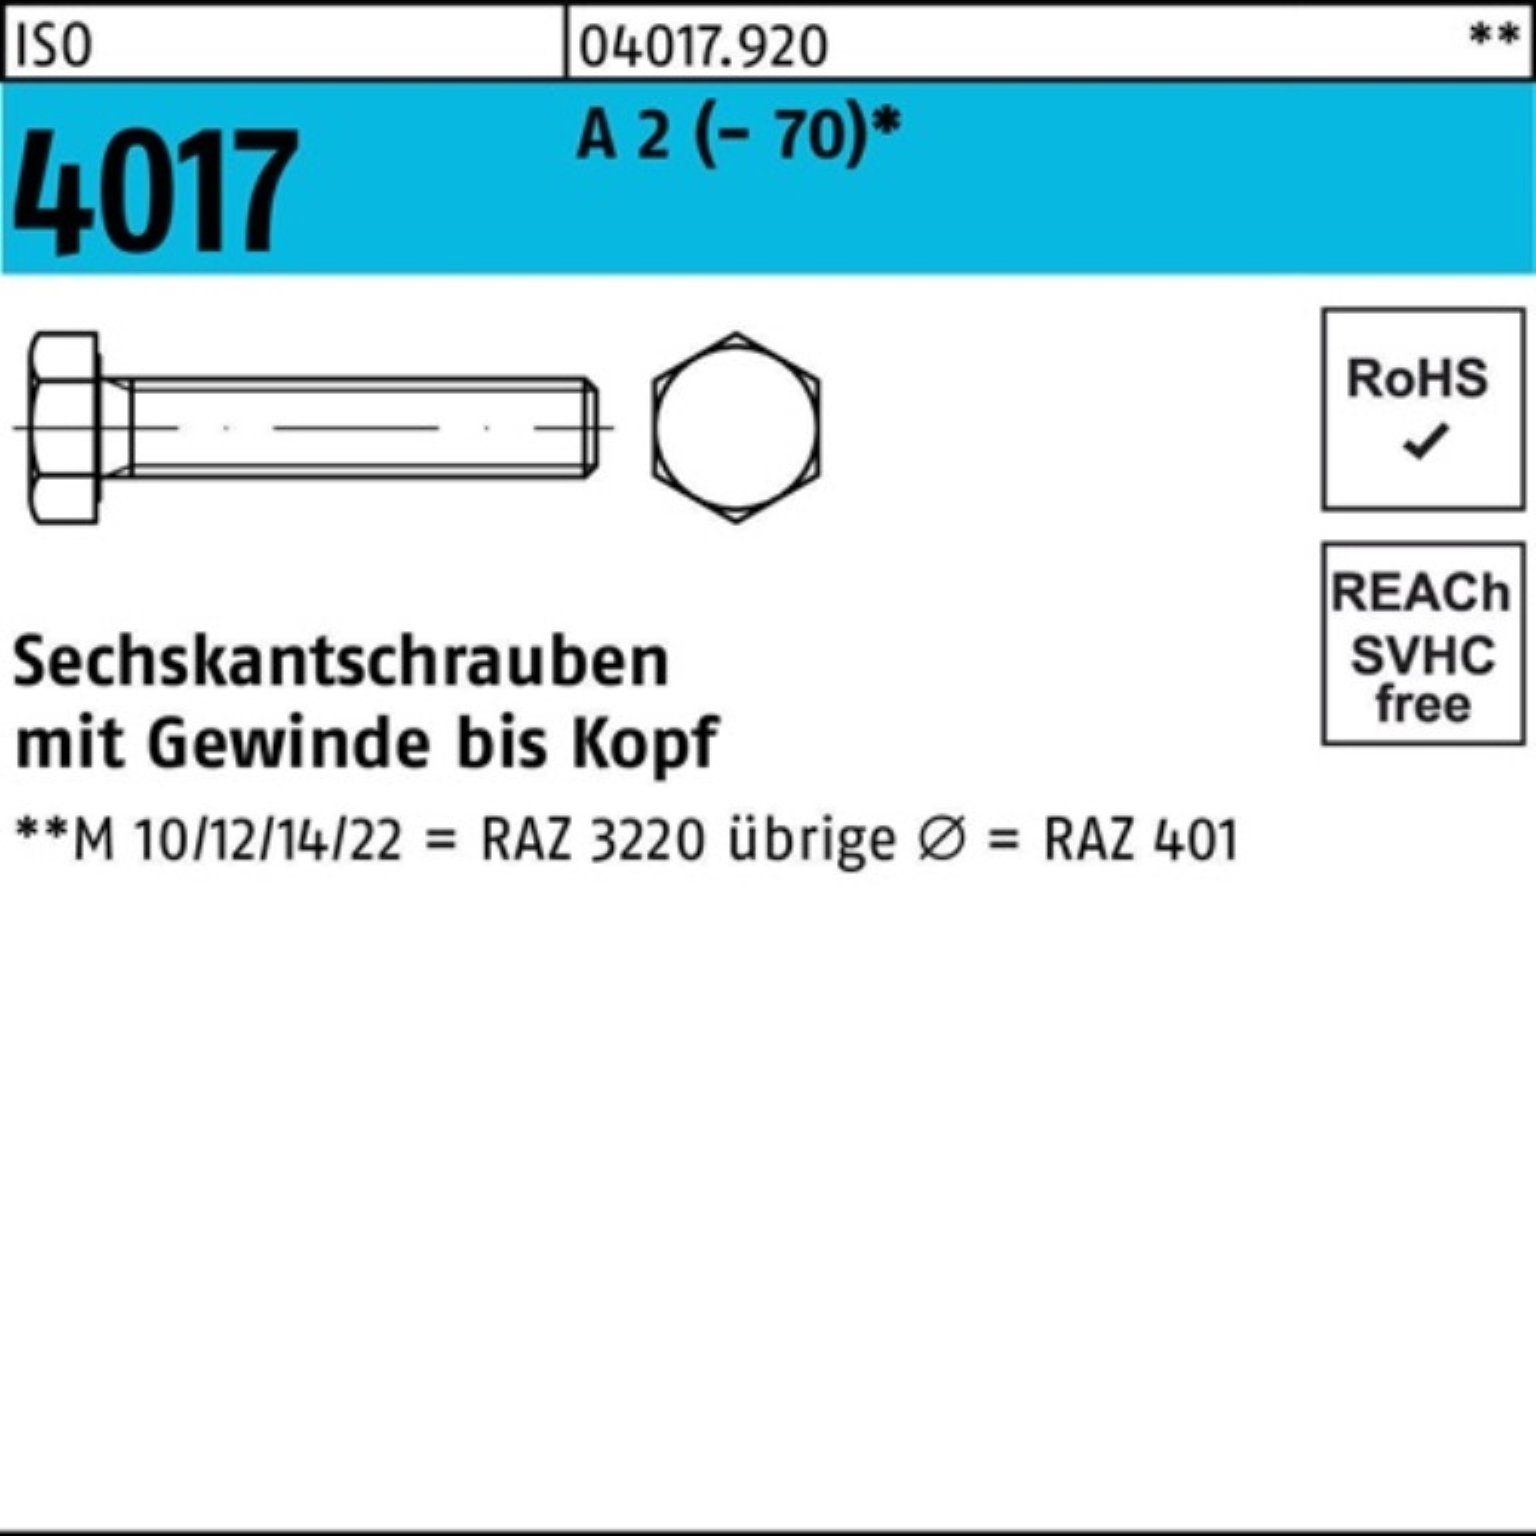 Bufab Sechskantschraube 100er (70) 1 2 4017 Sechskantschraube M30x Stück VG Pack ISO 90 A I